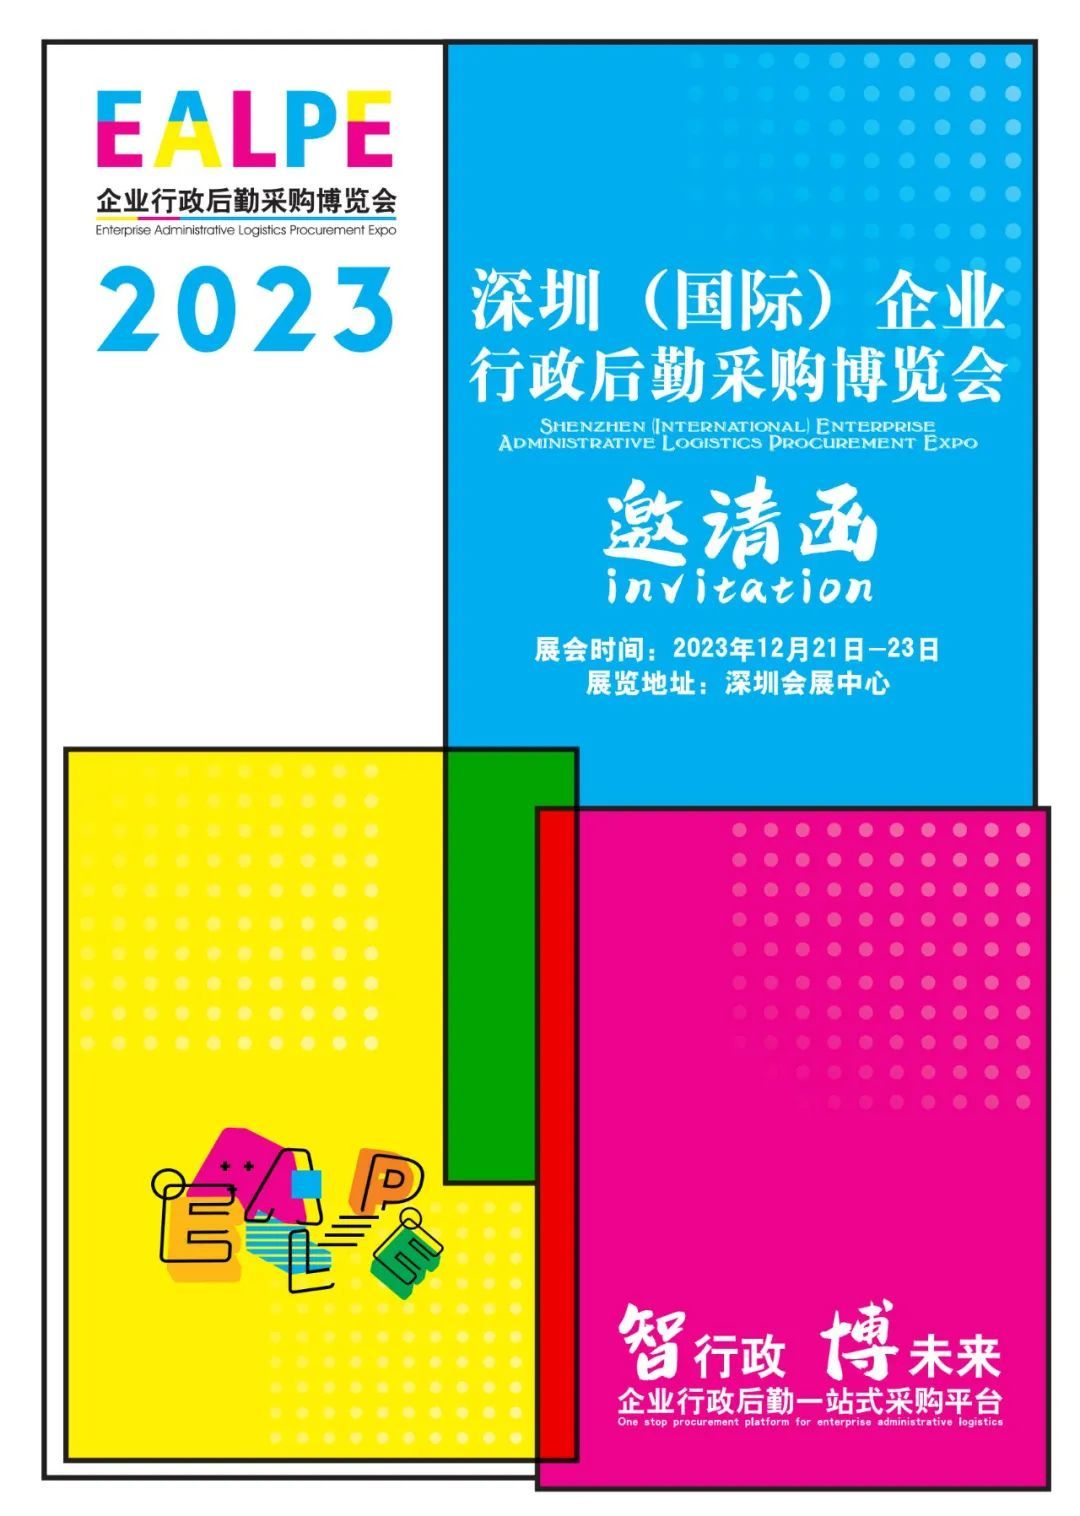 2023深圳国际企业行政后勤采购博览会 邀请函